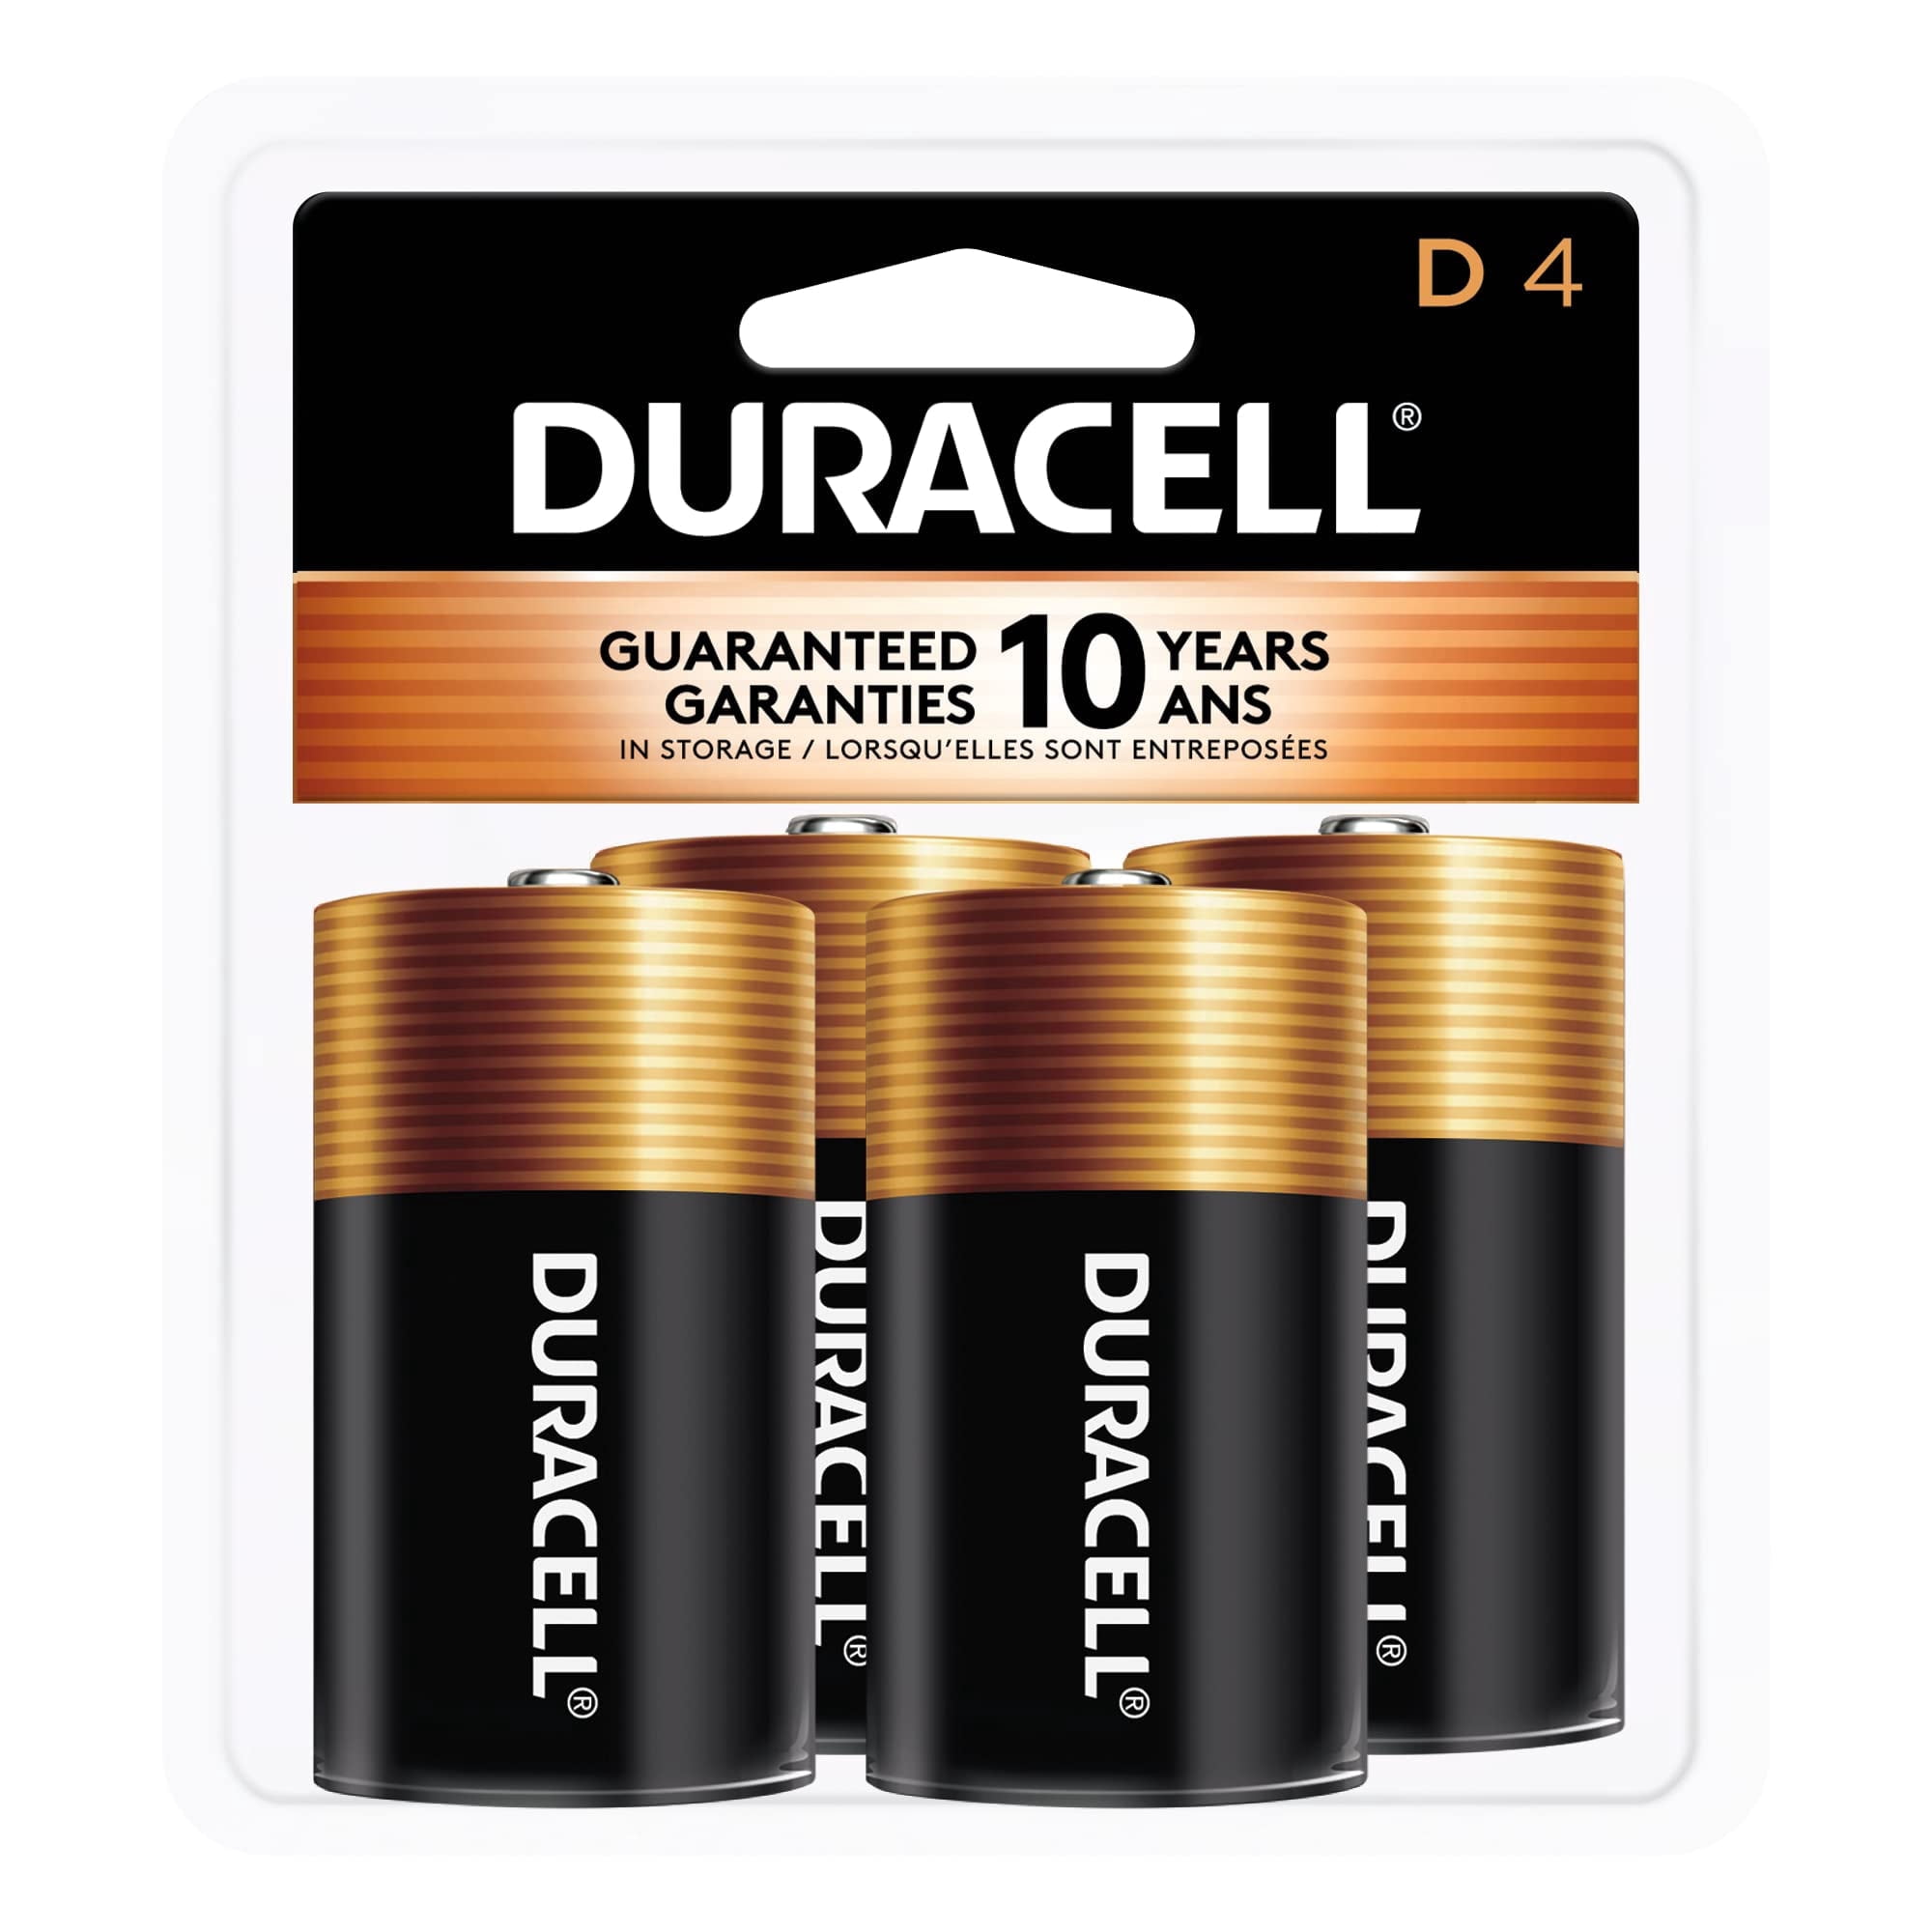 PRO-SAFE - Pack of 12 Size D, Alkaline, Standard Batteries